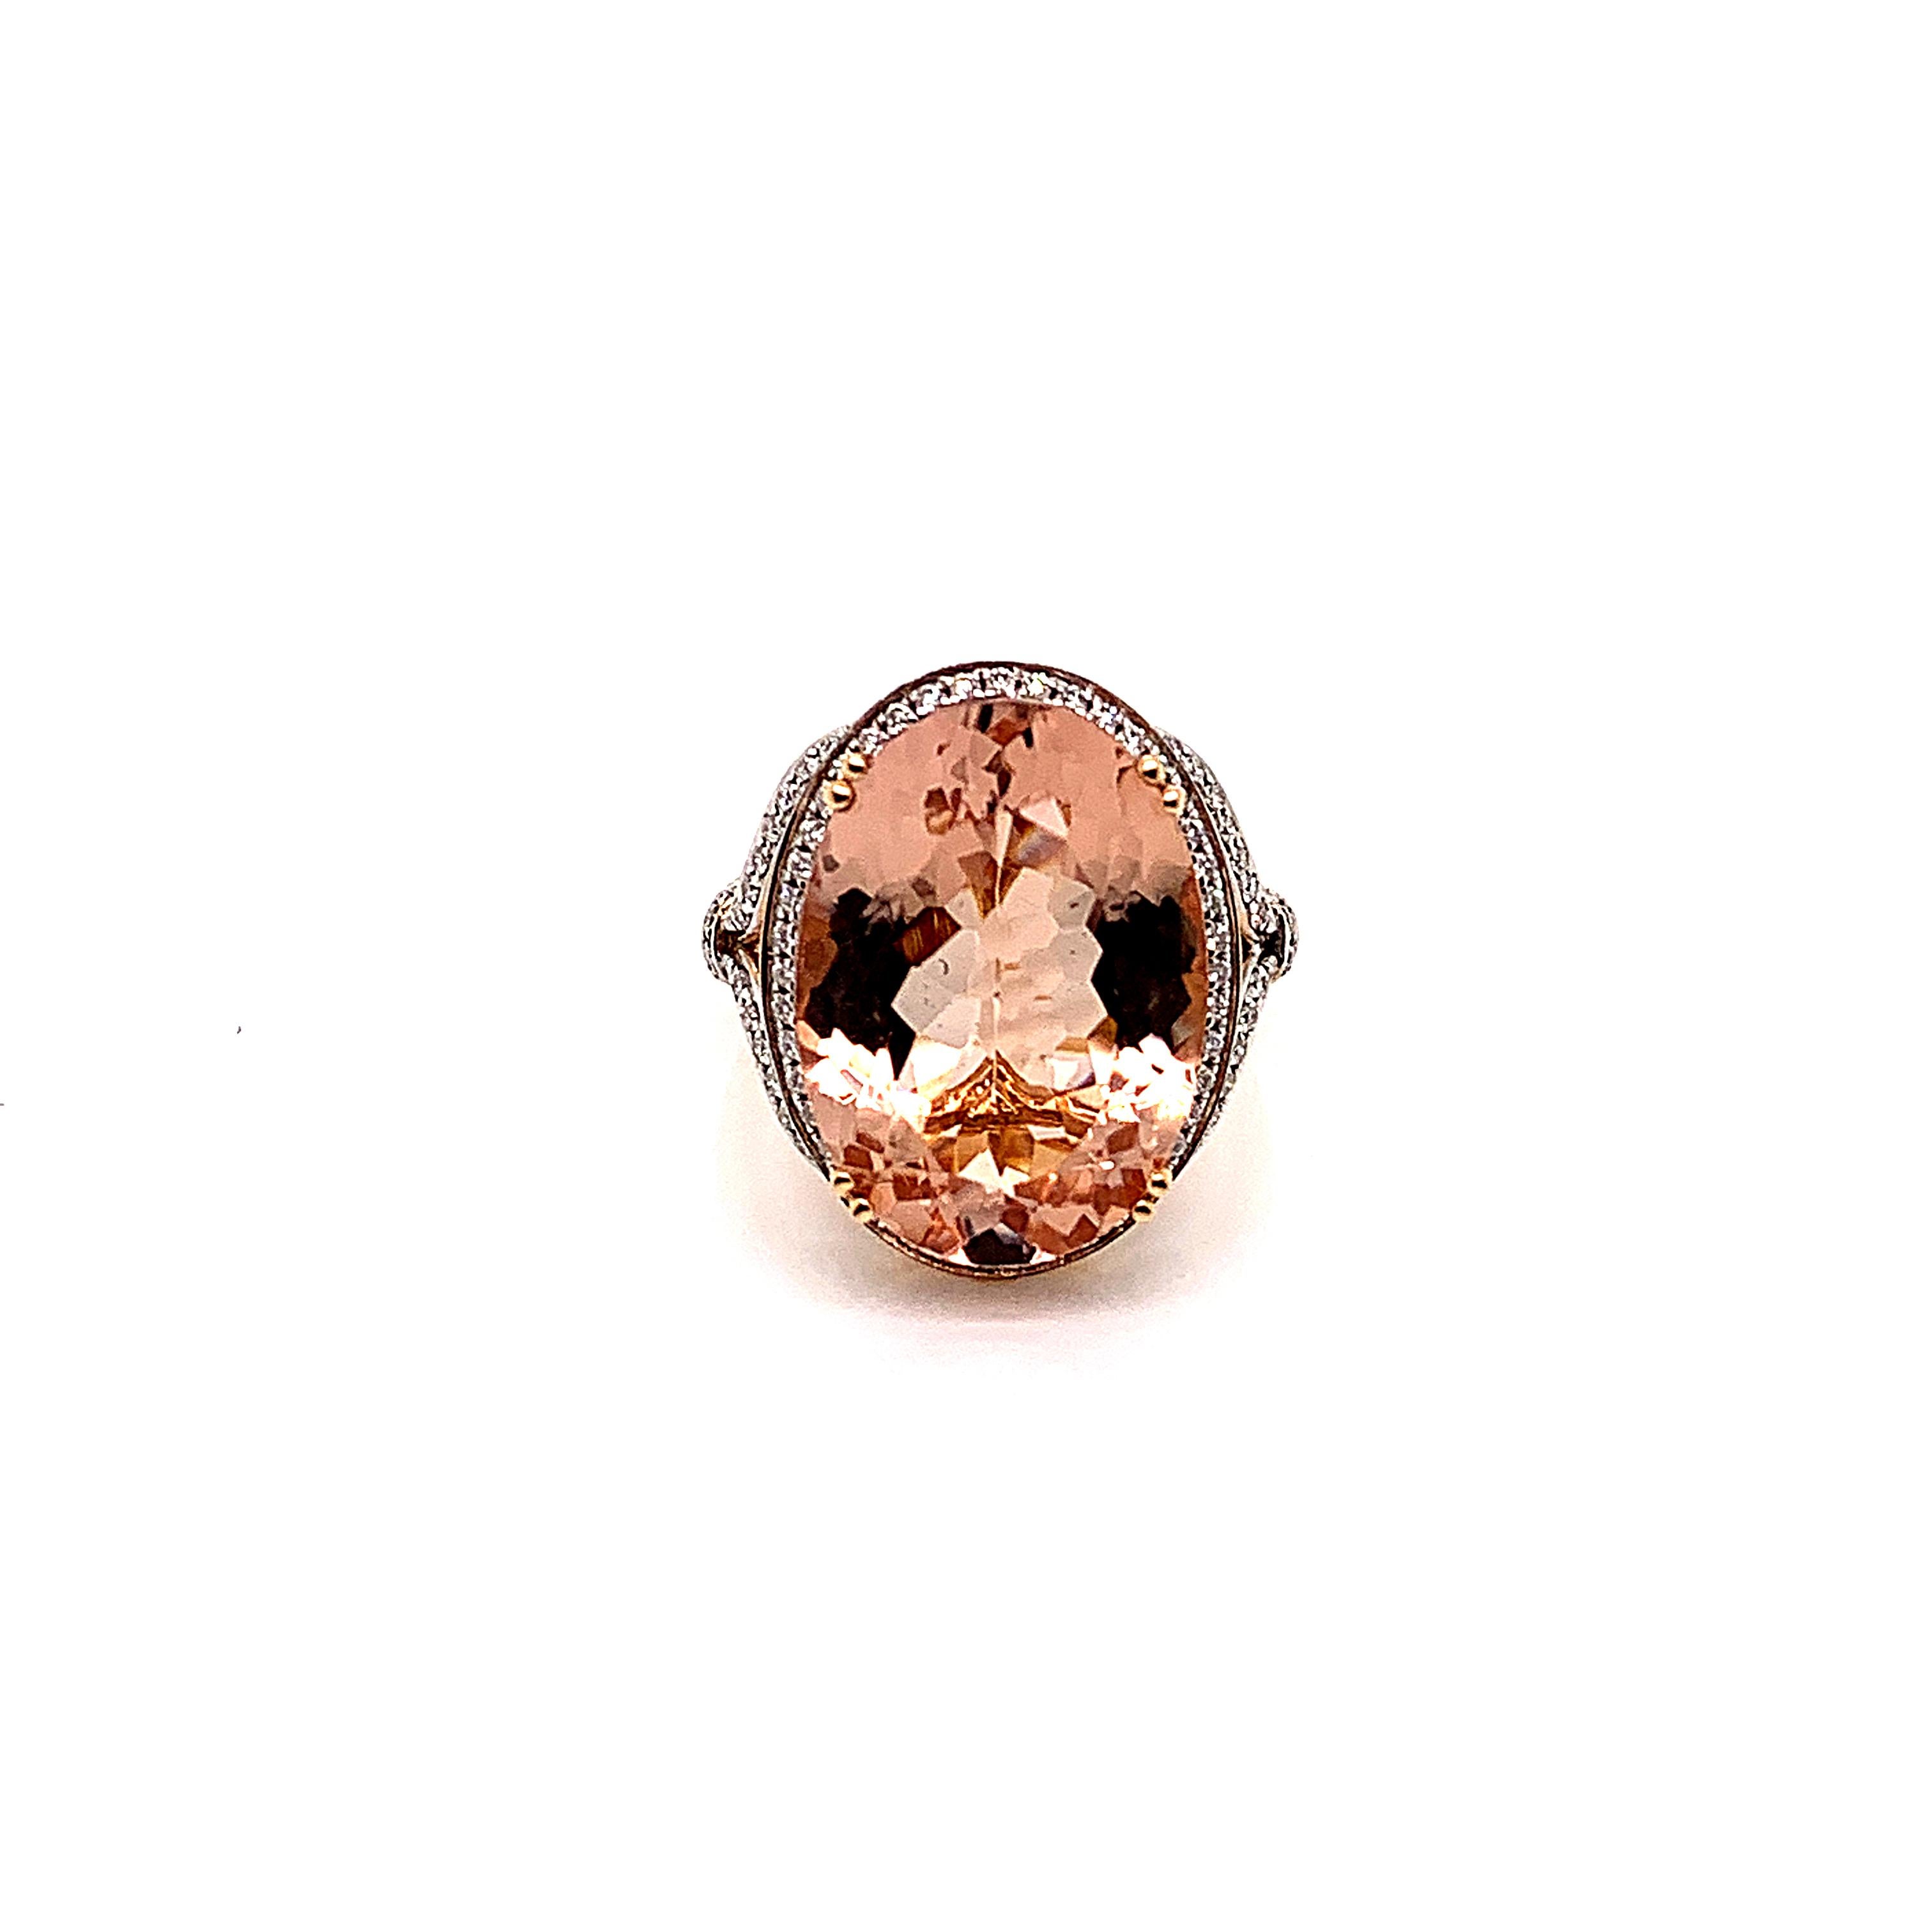 Diese Kollektion bietet eine Reihe von prächtigen Morganiten! Die mit Diamanten besetzten Ringe sind aus Roségold gefertigt und verleihen ihnen ein klassisches und elegantes Aussehen. 

Klassischer Morganit-Ring aus 18 Karat Roségold mit Diamanten.